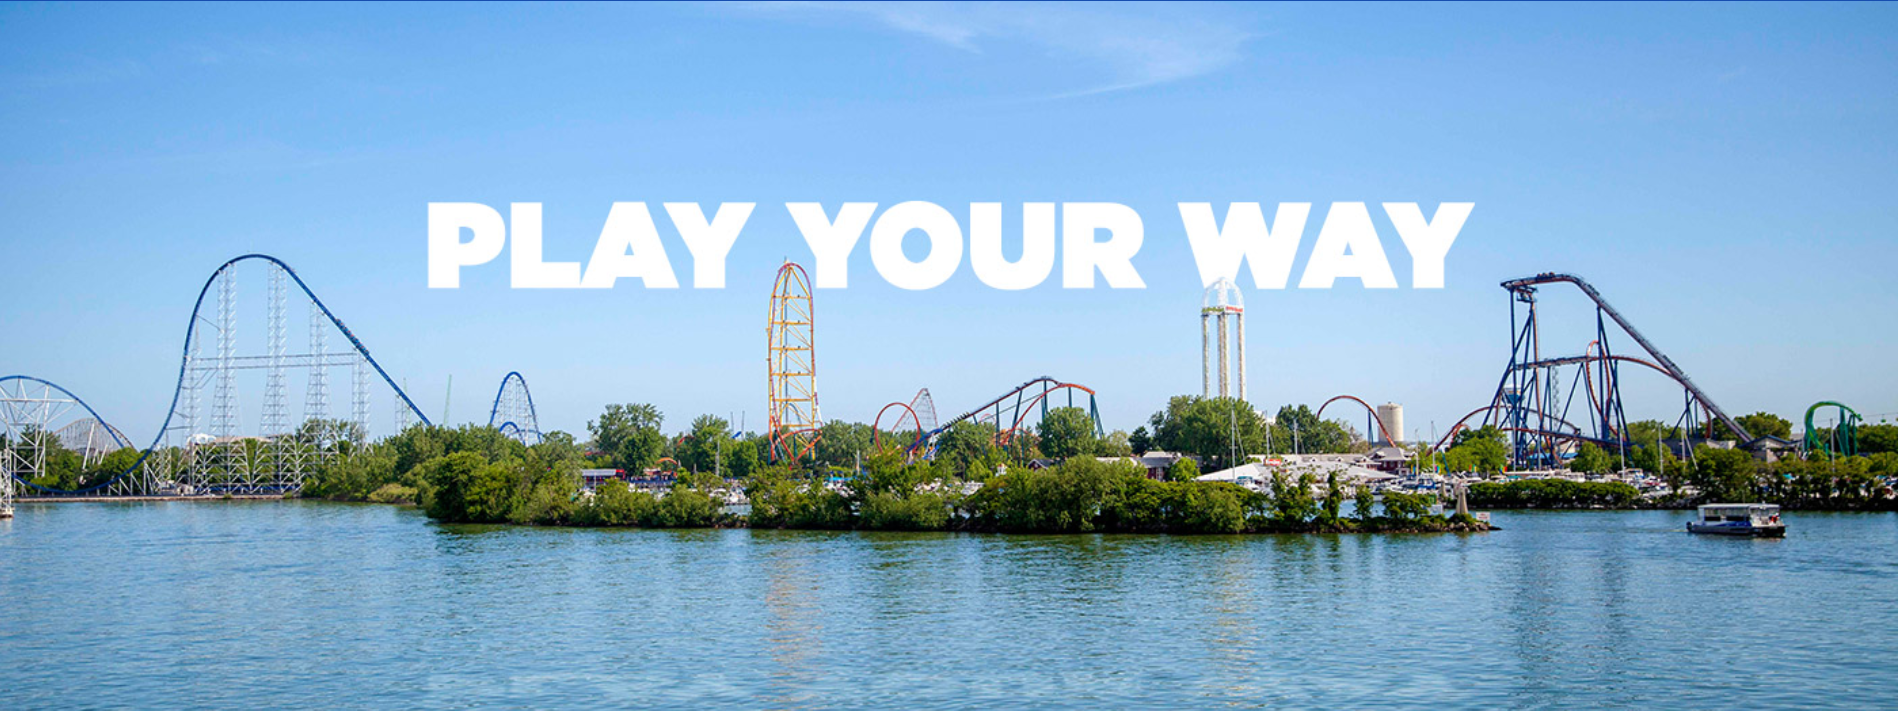 Cedar Point. Play your way!